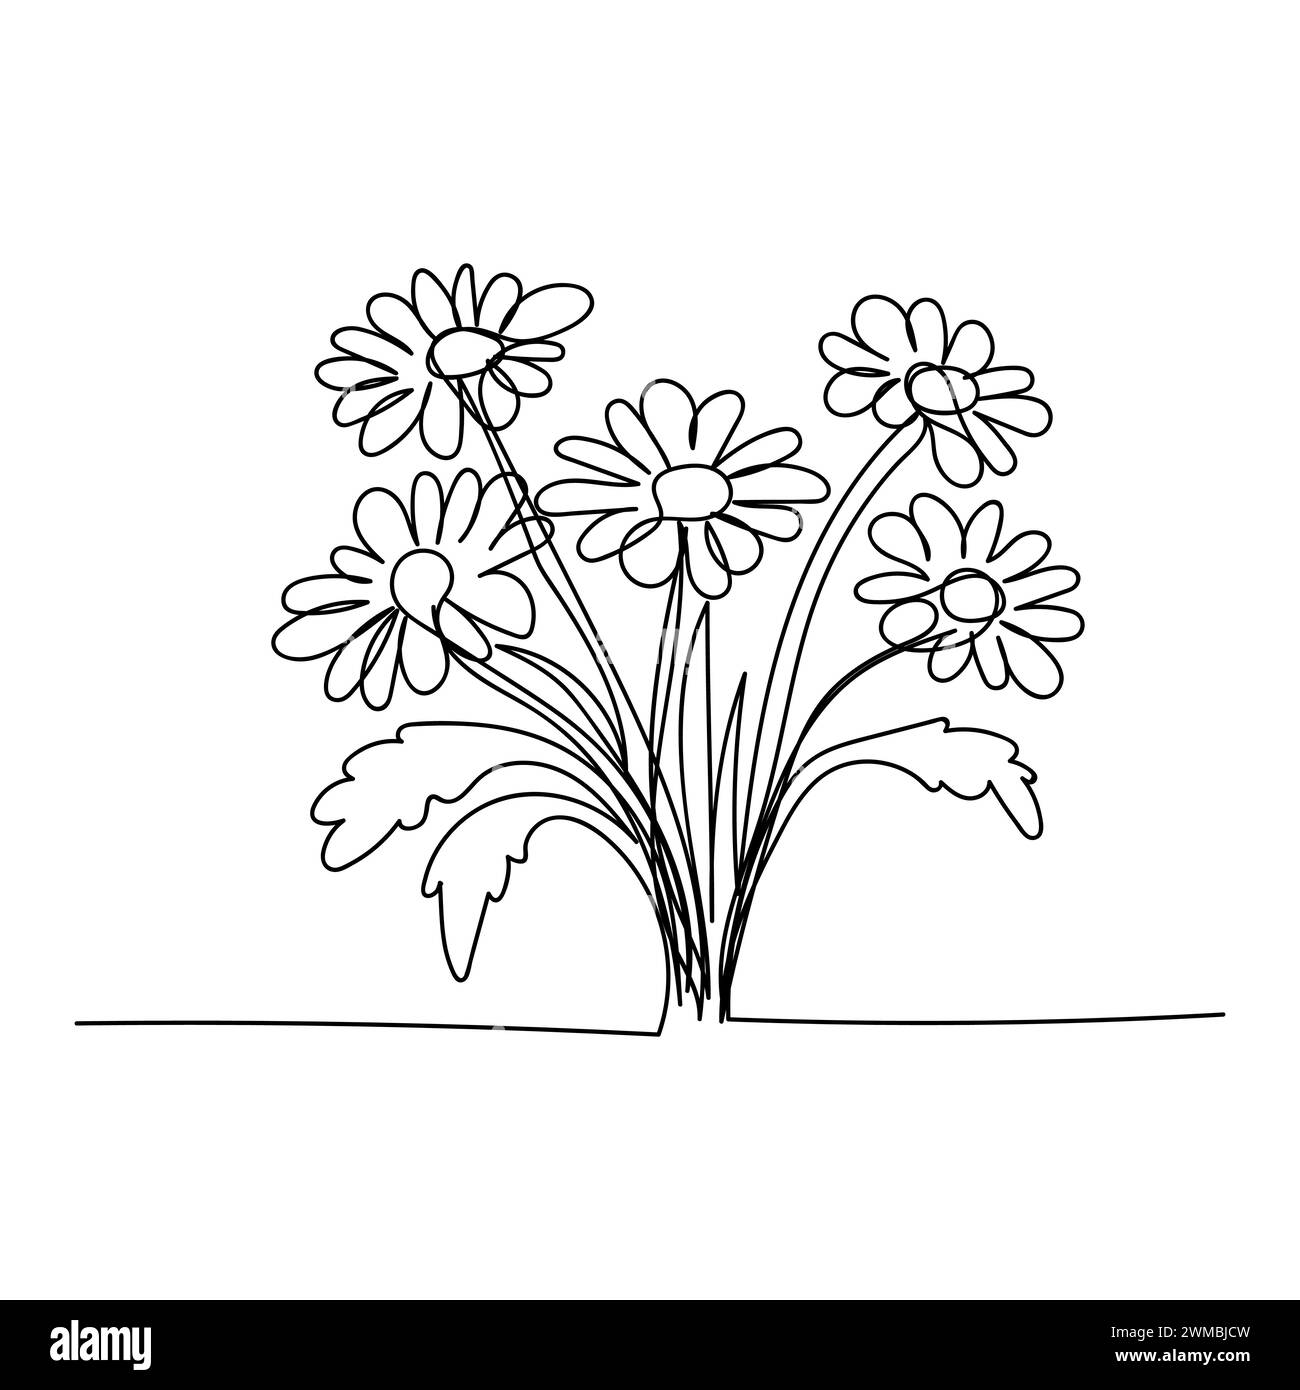 Strichkunst, Blumenstrauß Gänseblümchen Frühling und Sommer, Zeichnung mit einer Linie. Weißer Vektor-Hintergrund Stock Vektor